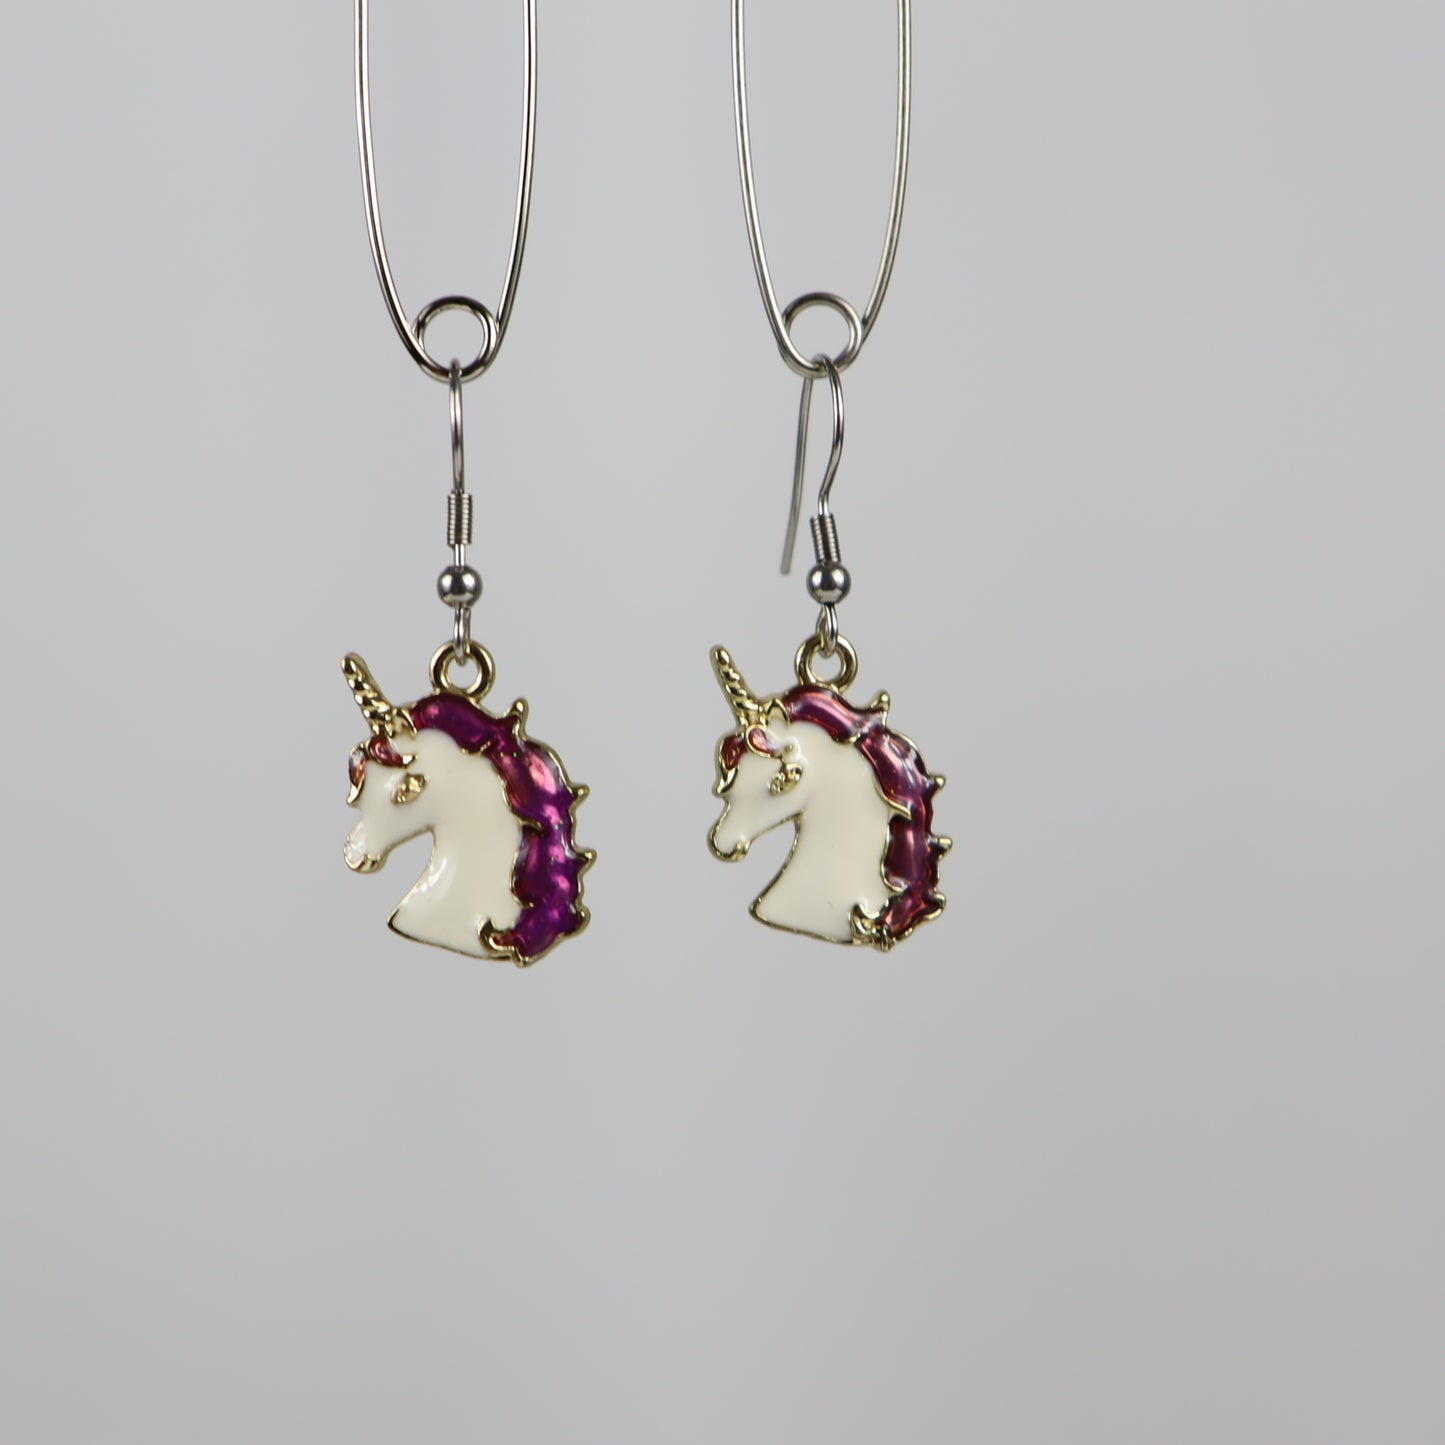 Unicorn face earrings - Purple earrings